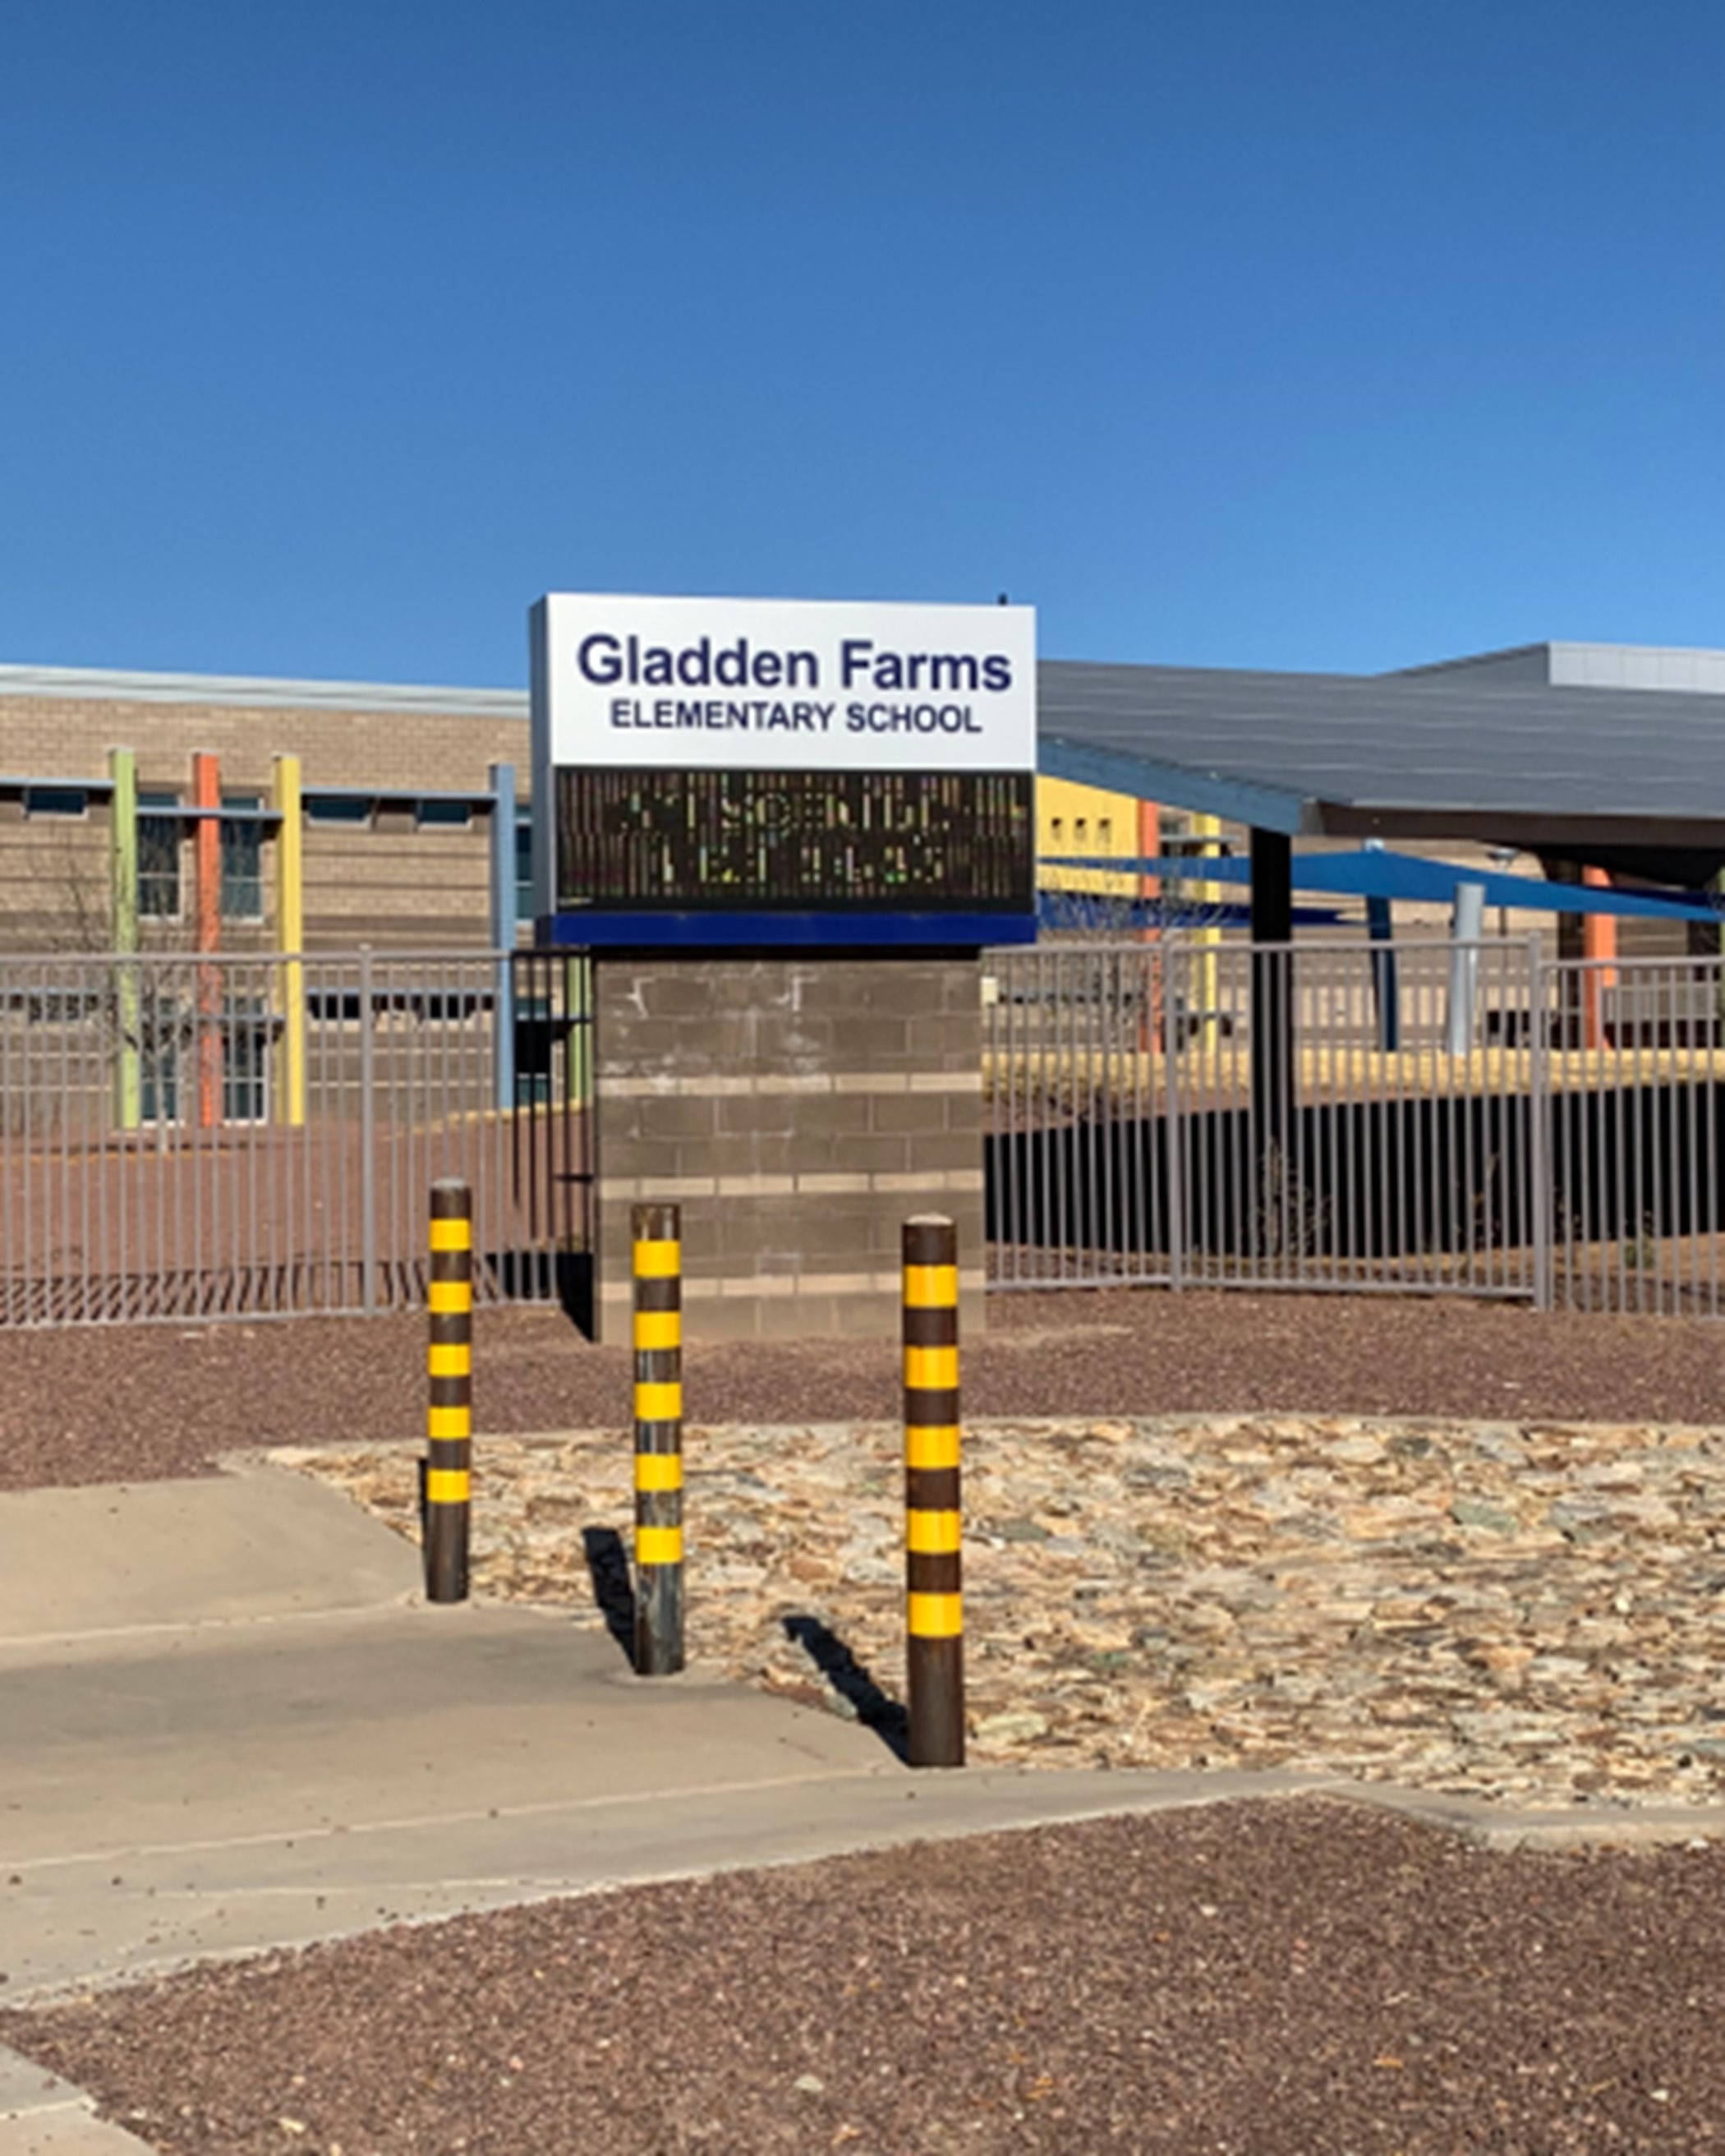 Gladden Farms Elementary School